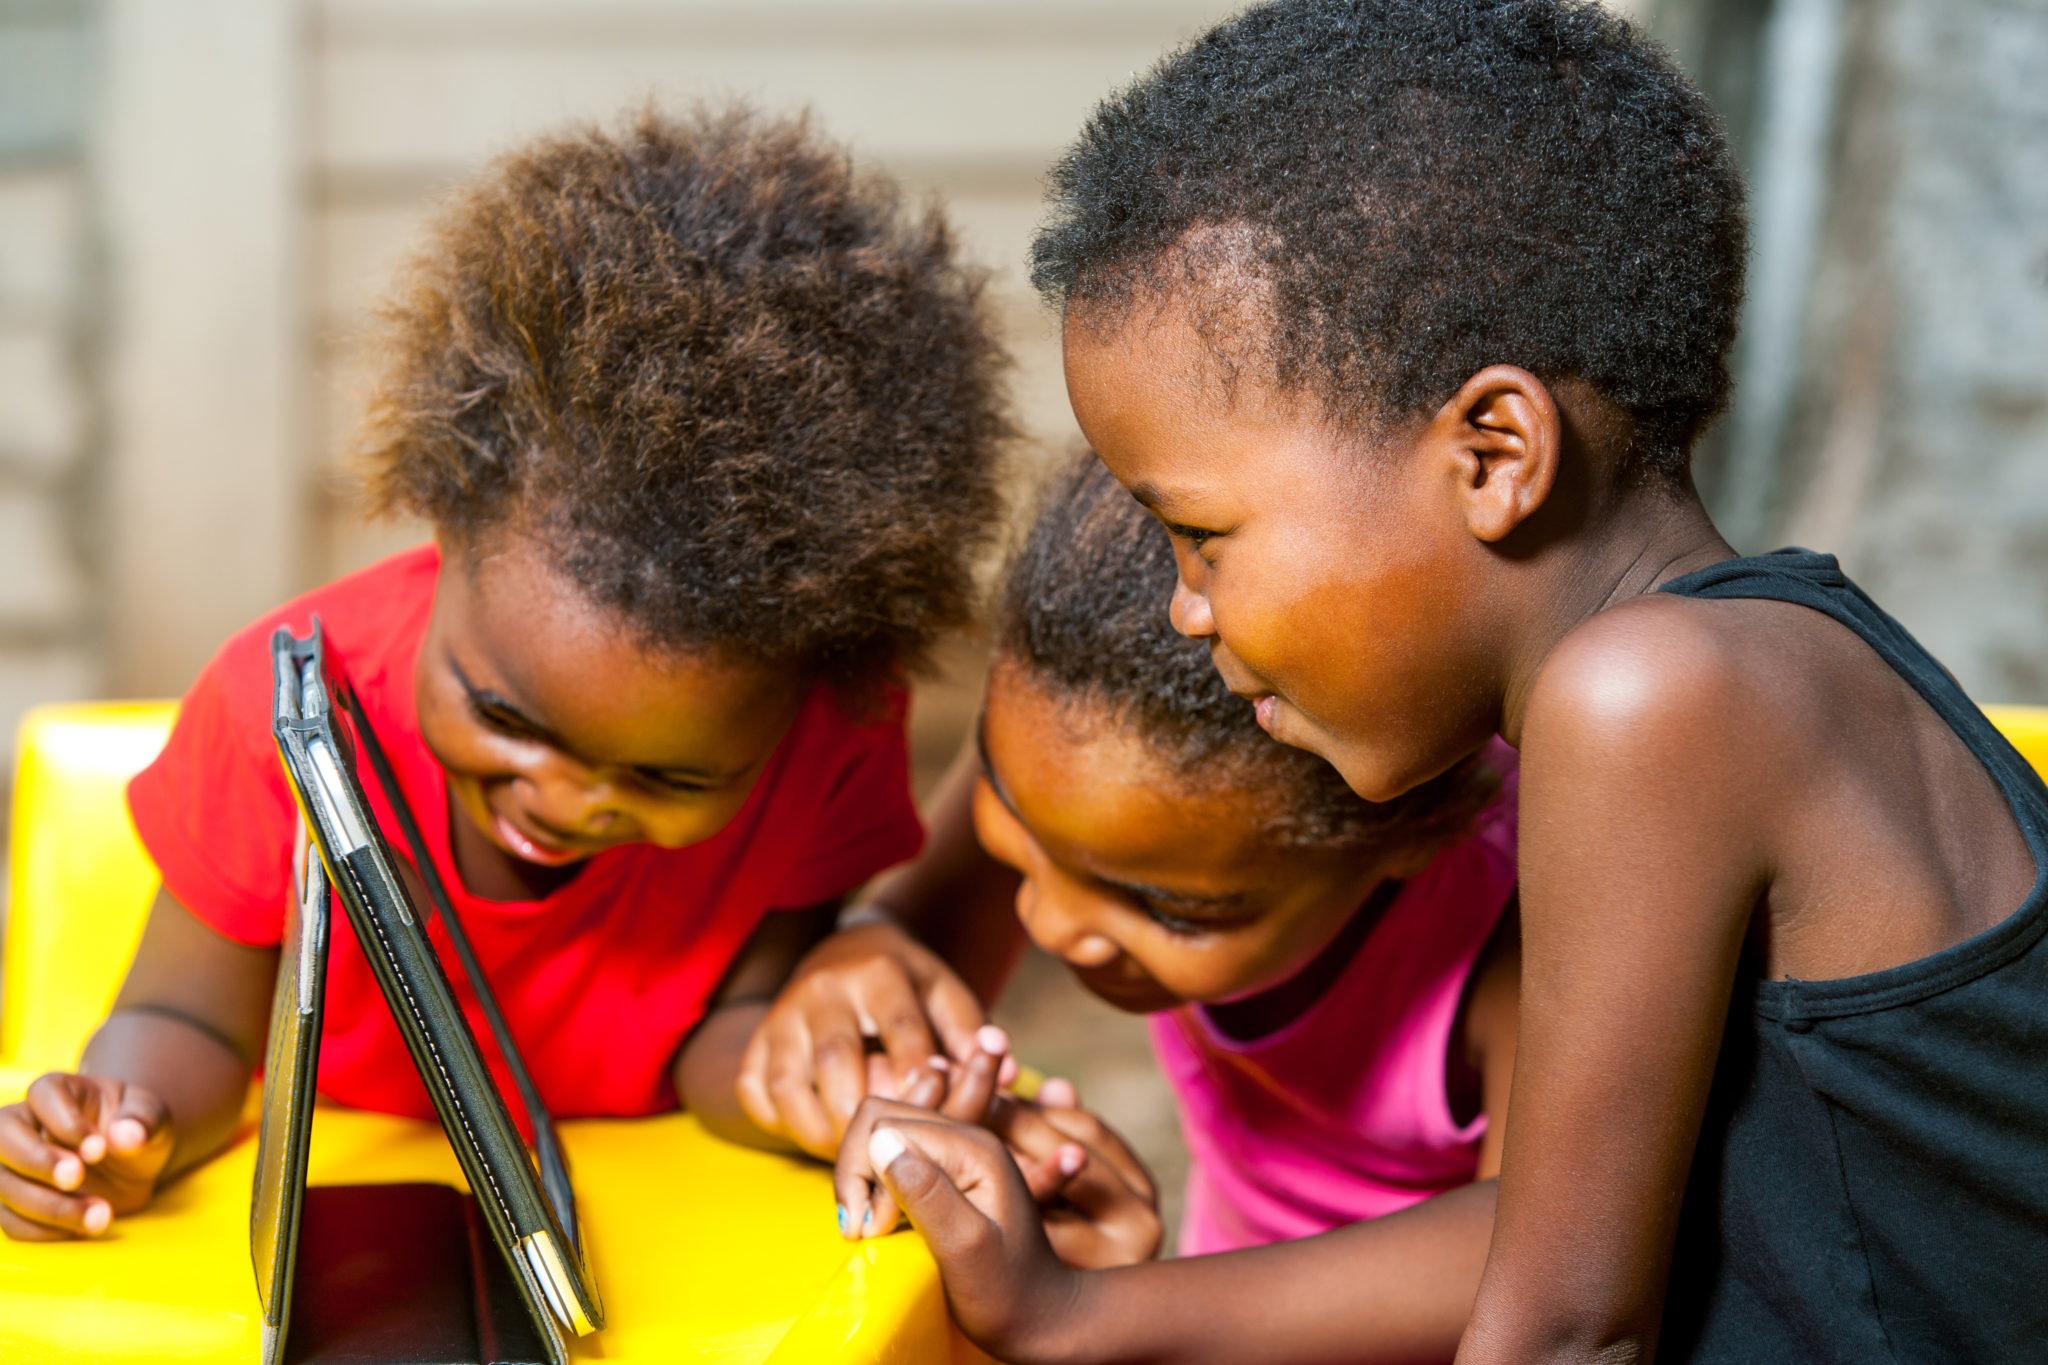 Moodle dà potere agli educatori in Ruanda, immagine dell'Africa orientale